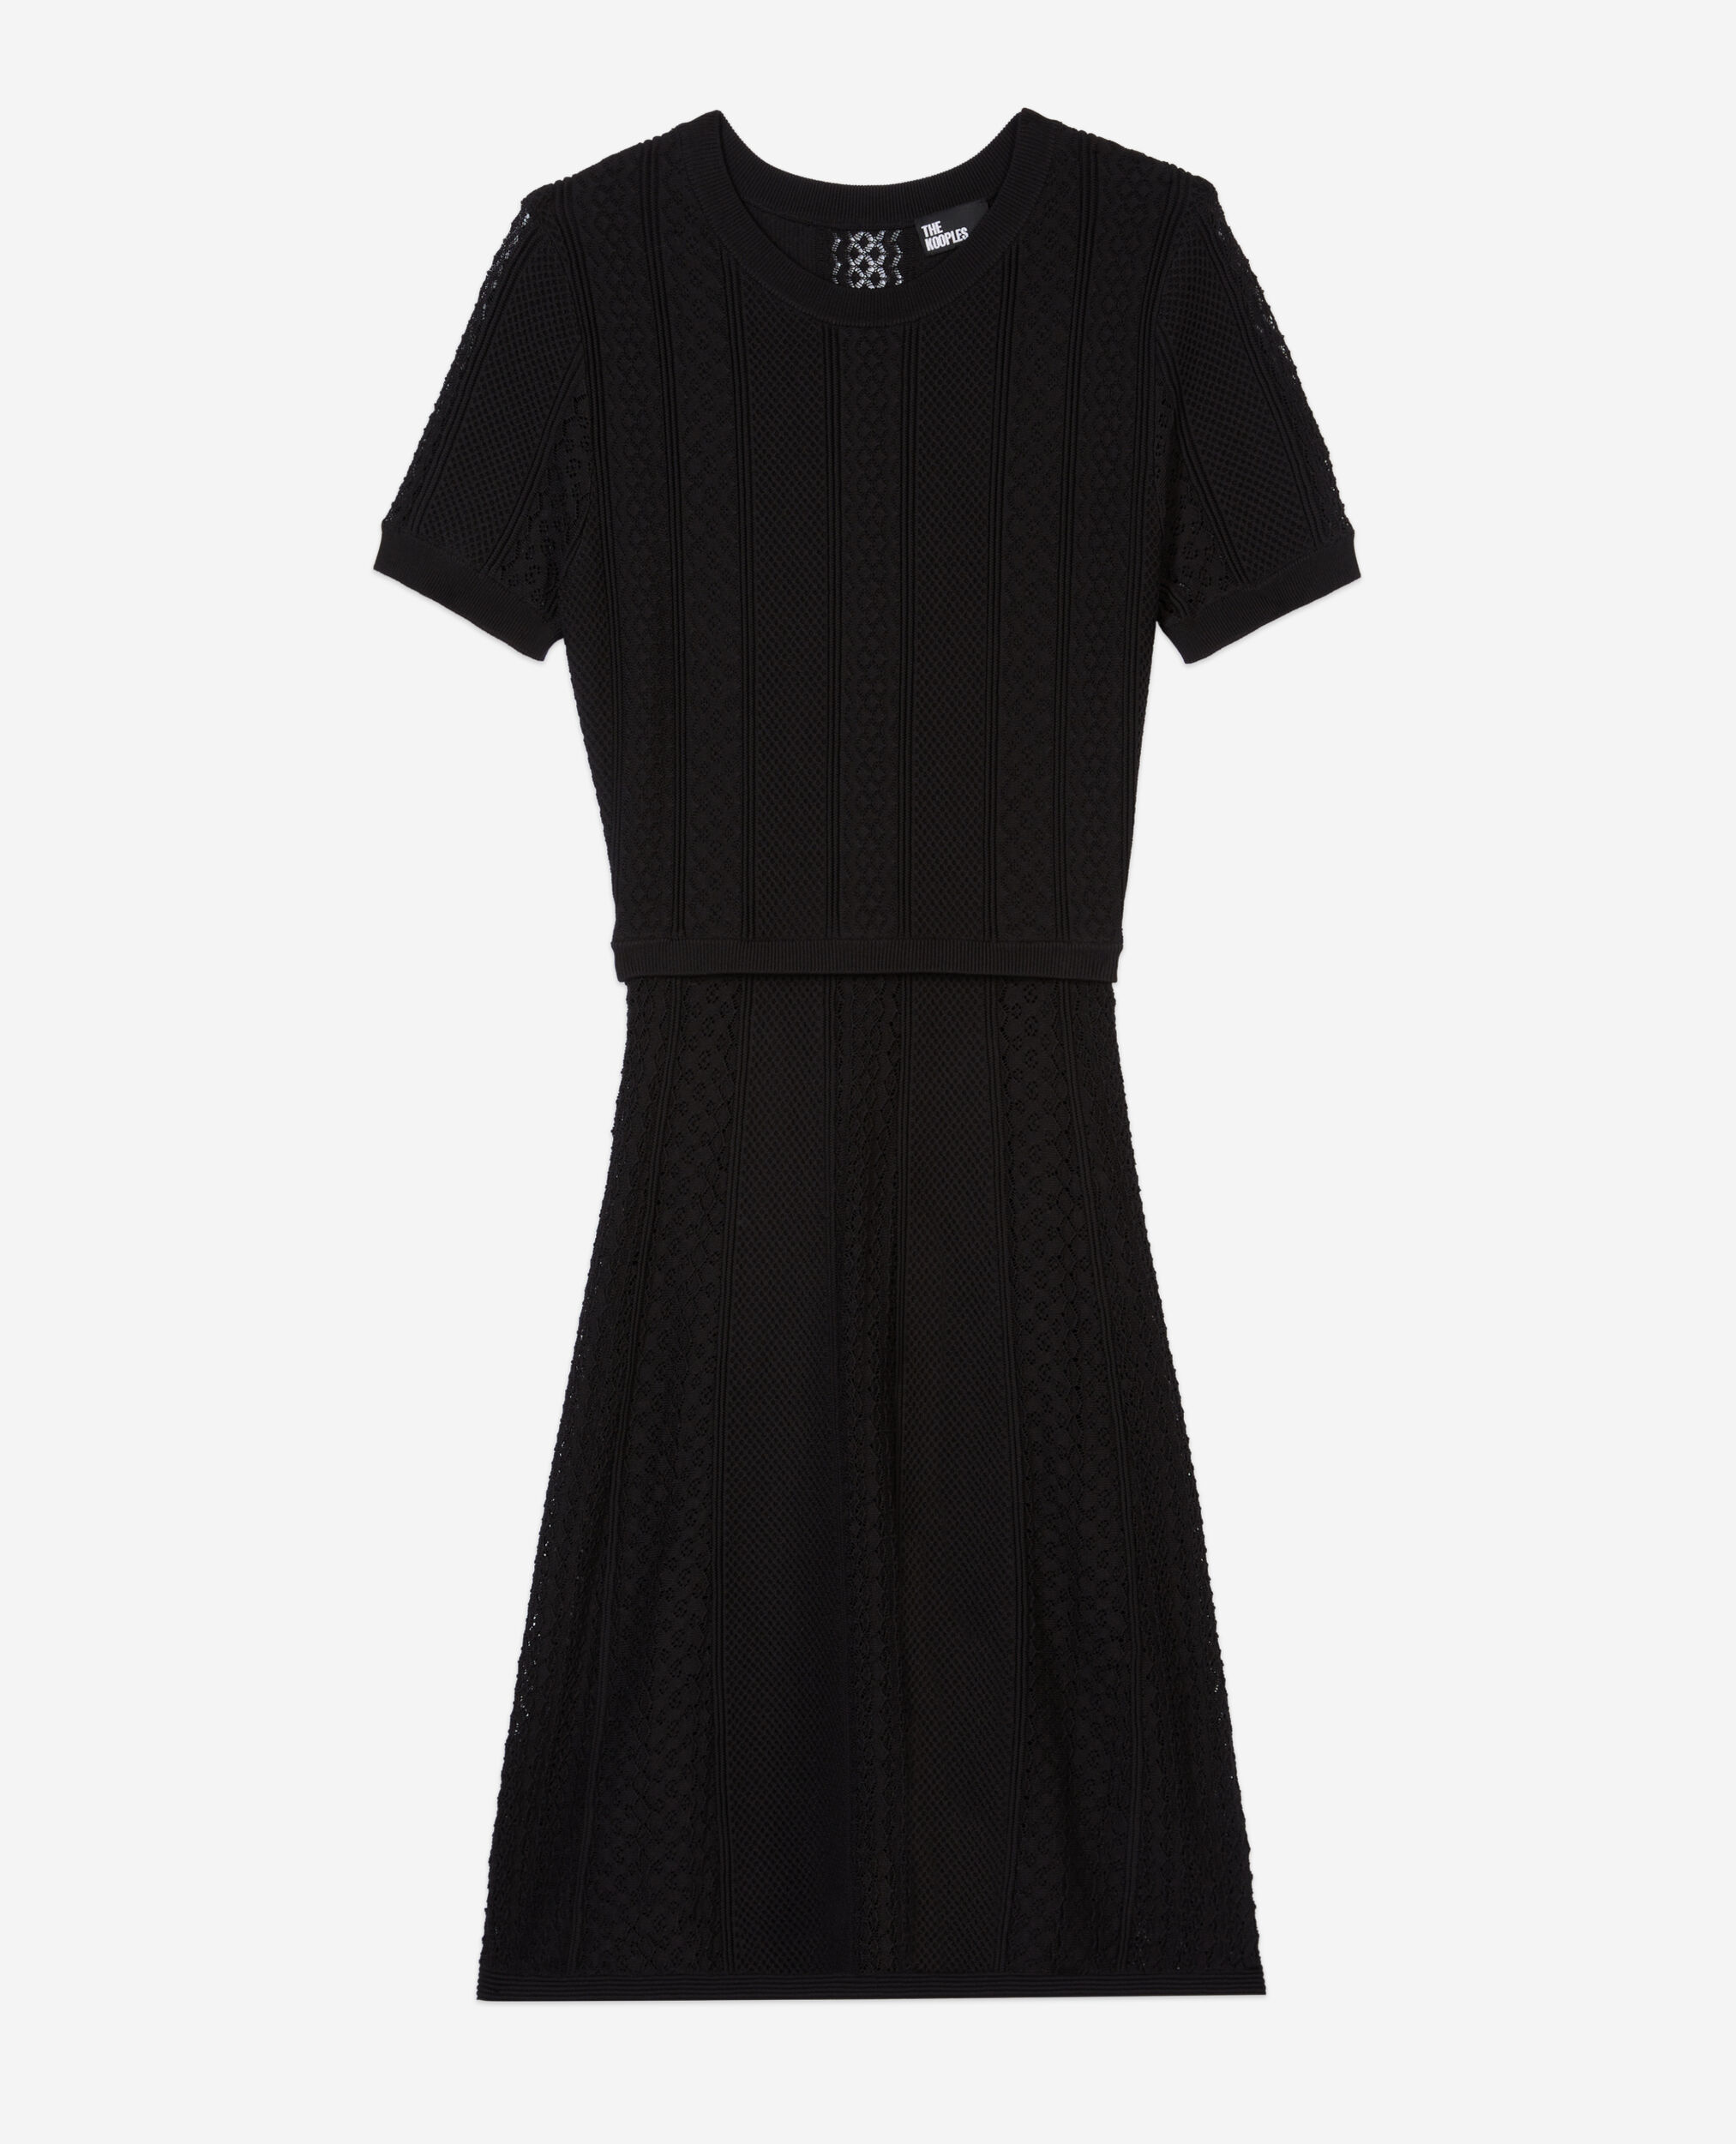 Short black openwork knit dress, BLACK, hi-res image number null